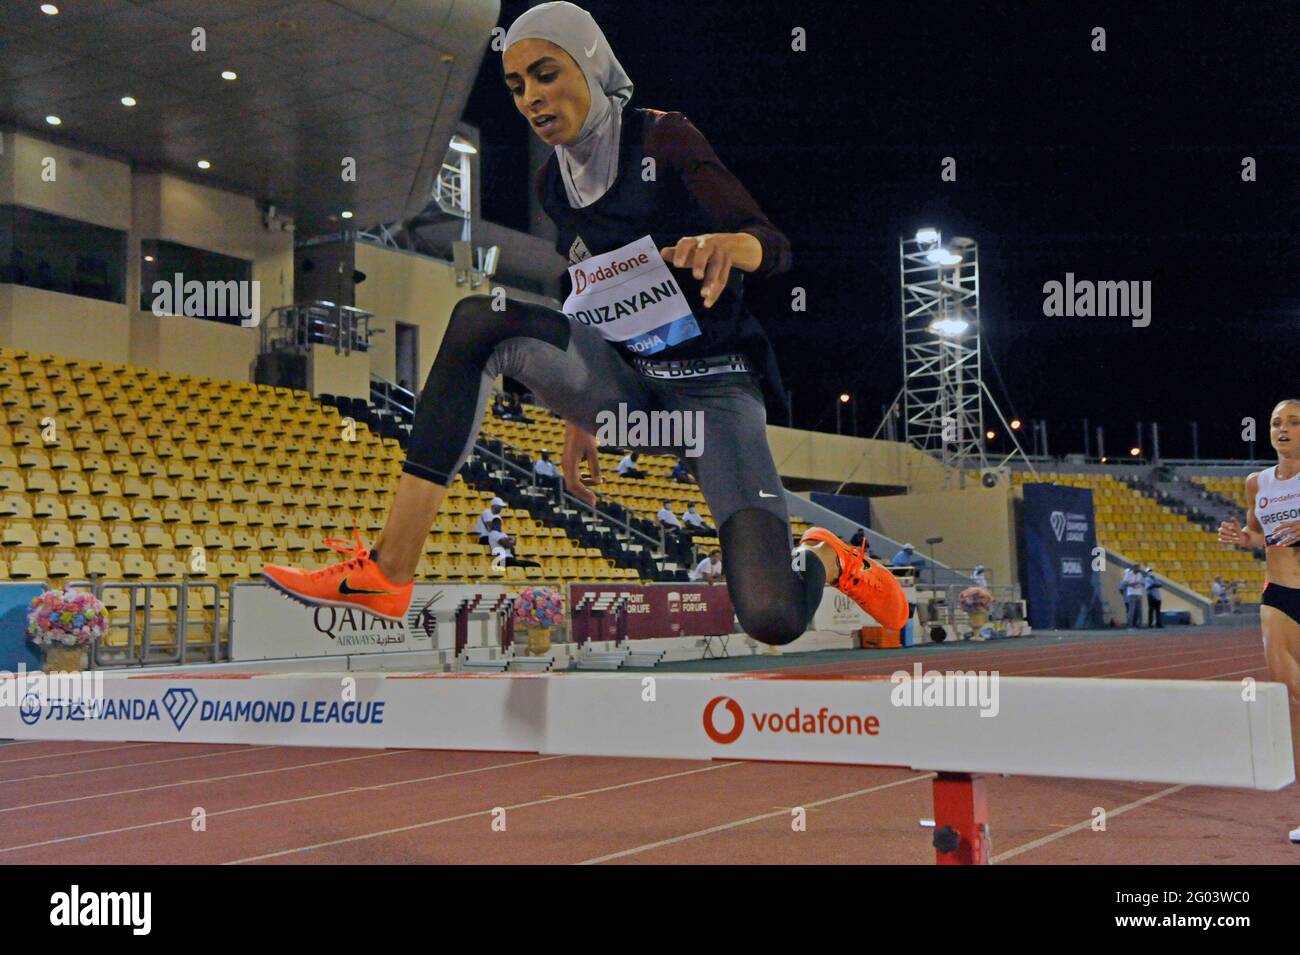 Marwa Bouzayani (TUN) est en concurrence avec la steeplechase des femmes portant un hijab Foulard à voile lors de la réunion de la Ligue mondiale des diamants Athlétiques de Doha À Suhaim Bin Banque D'Images